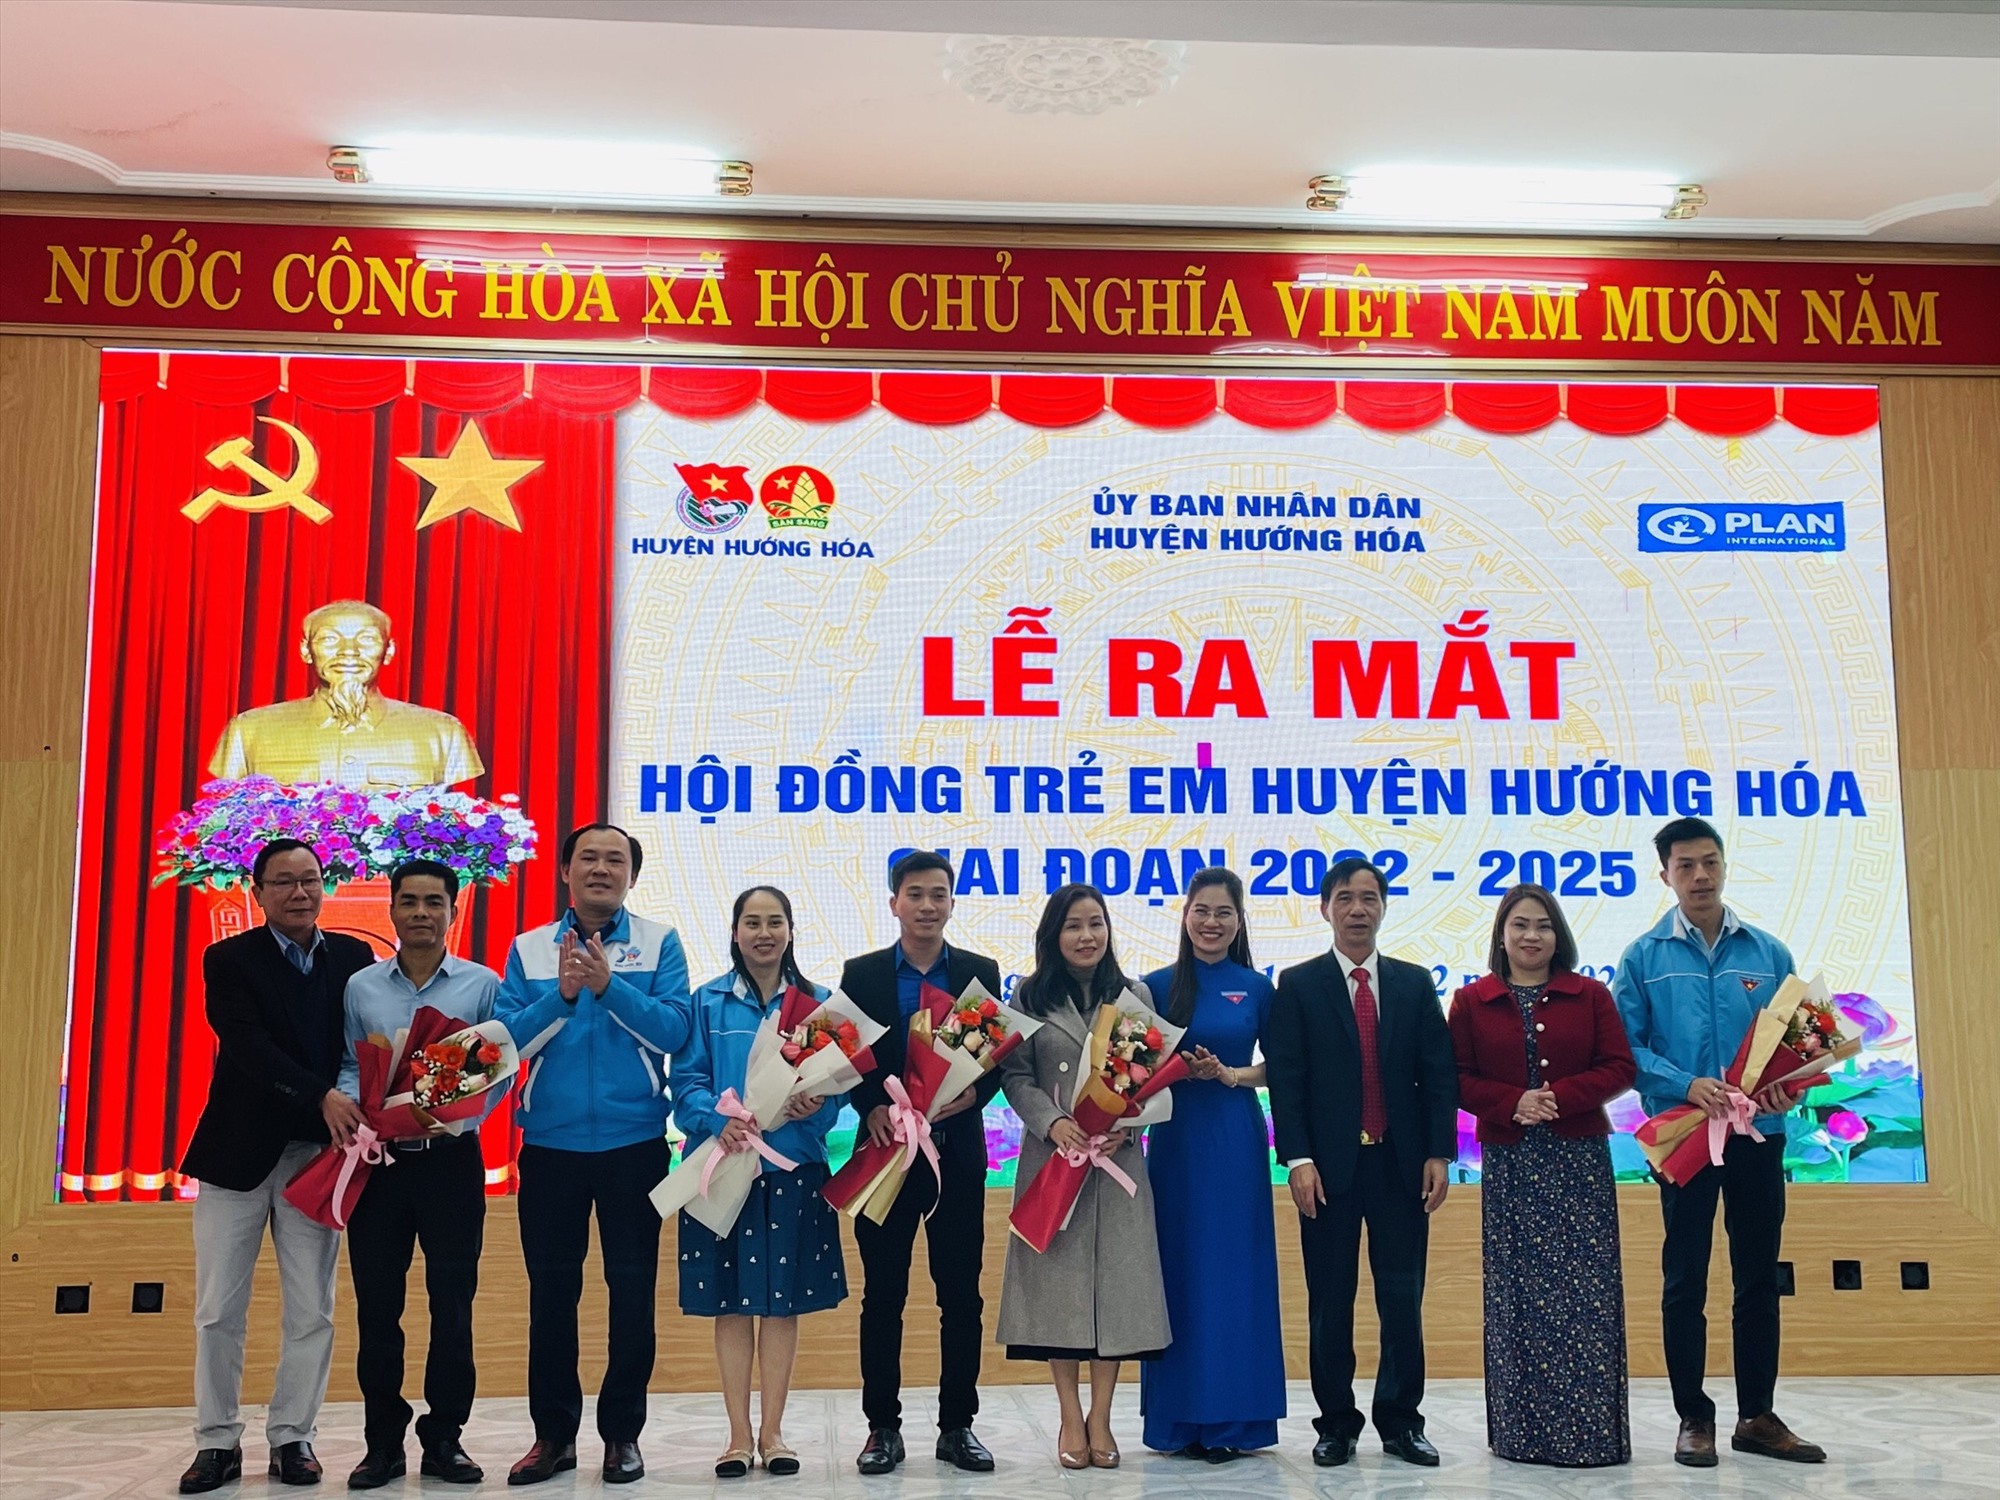 Lãnh đạo huyện Hướng Hóa và các đơn vị tặng hoa cho các thành viên Hội đồng Trẻ em huyện-Ảnh: N.Đ.P